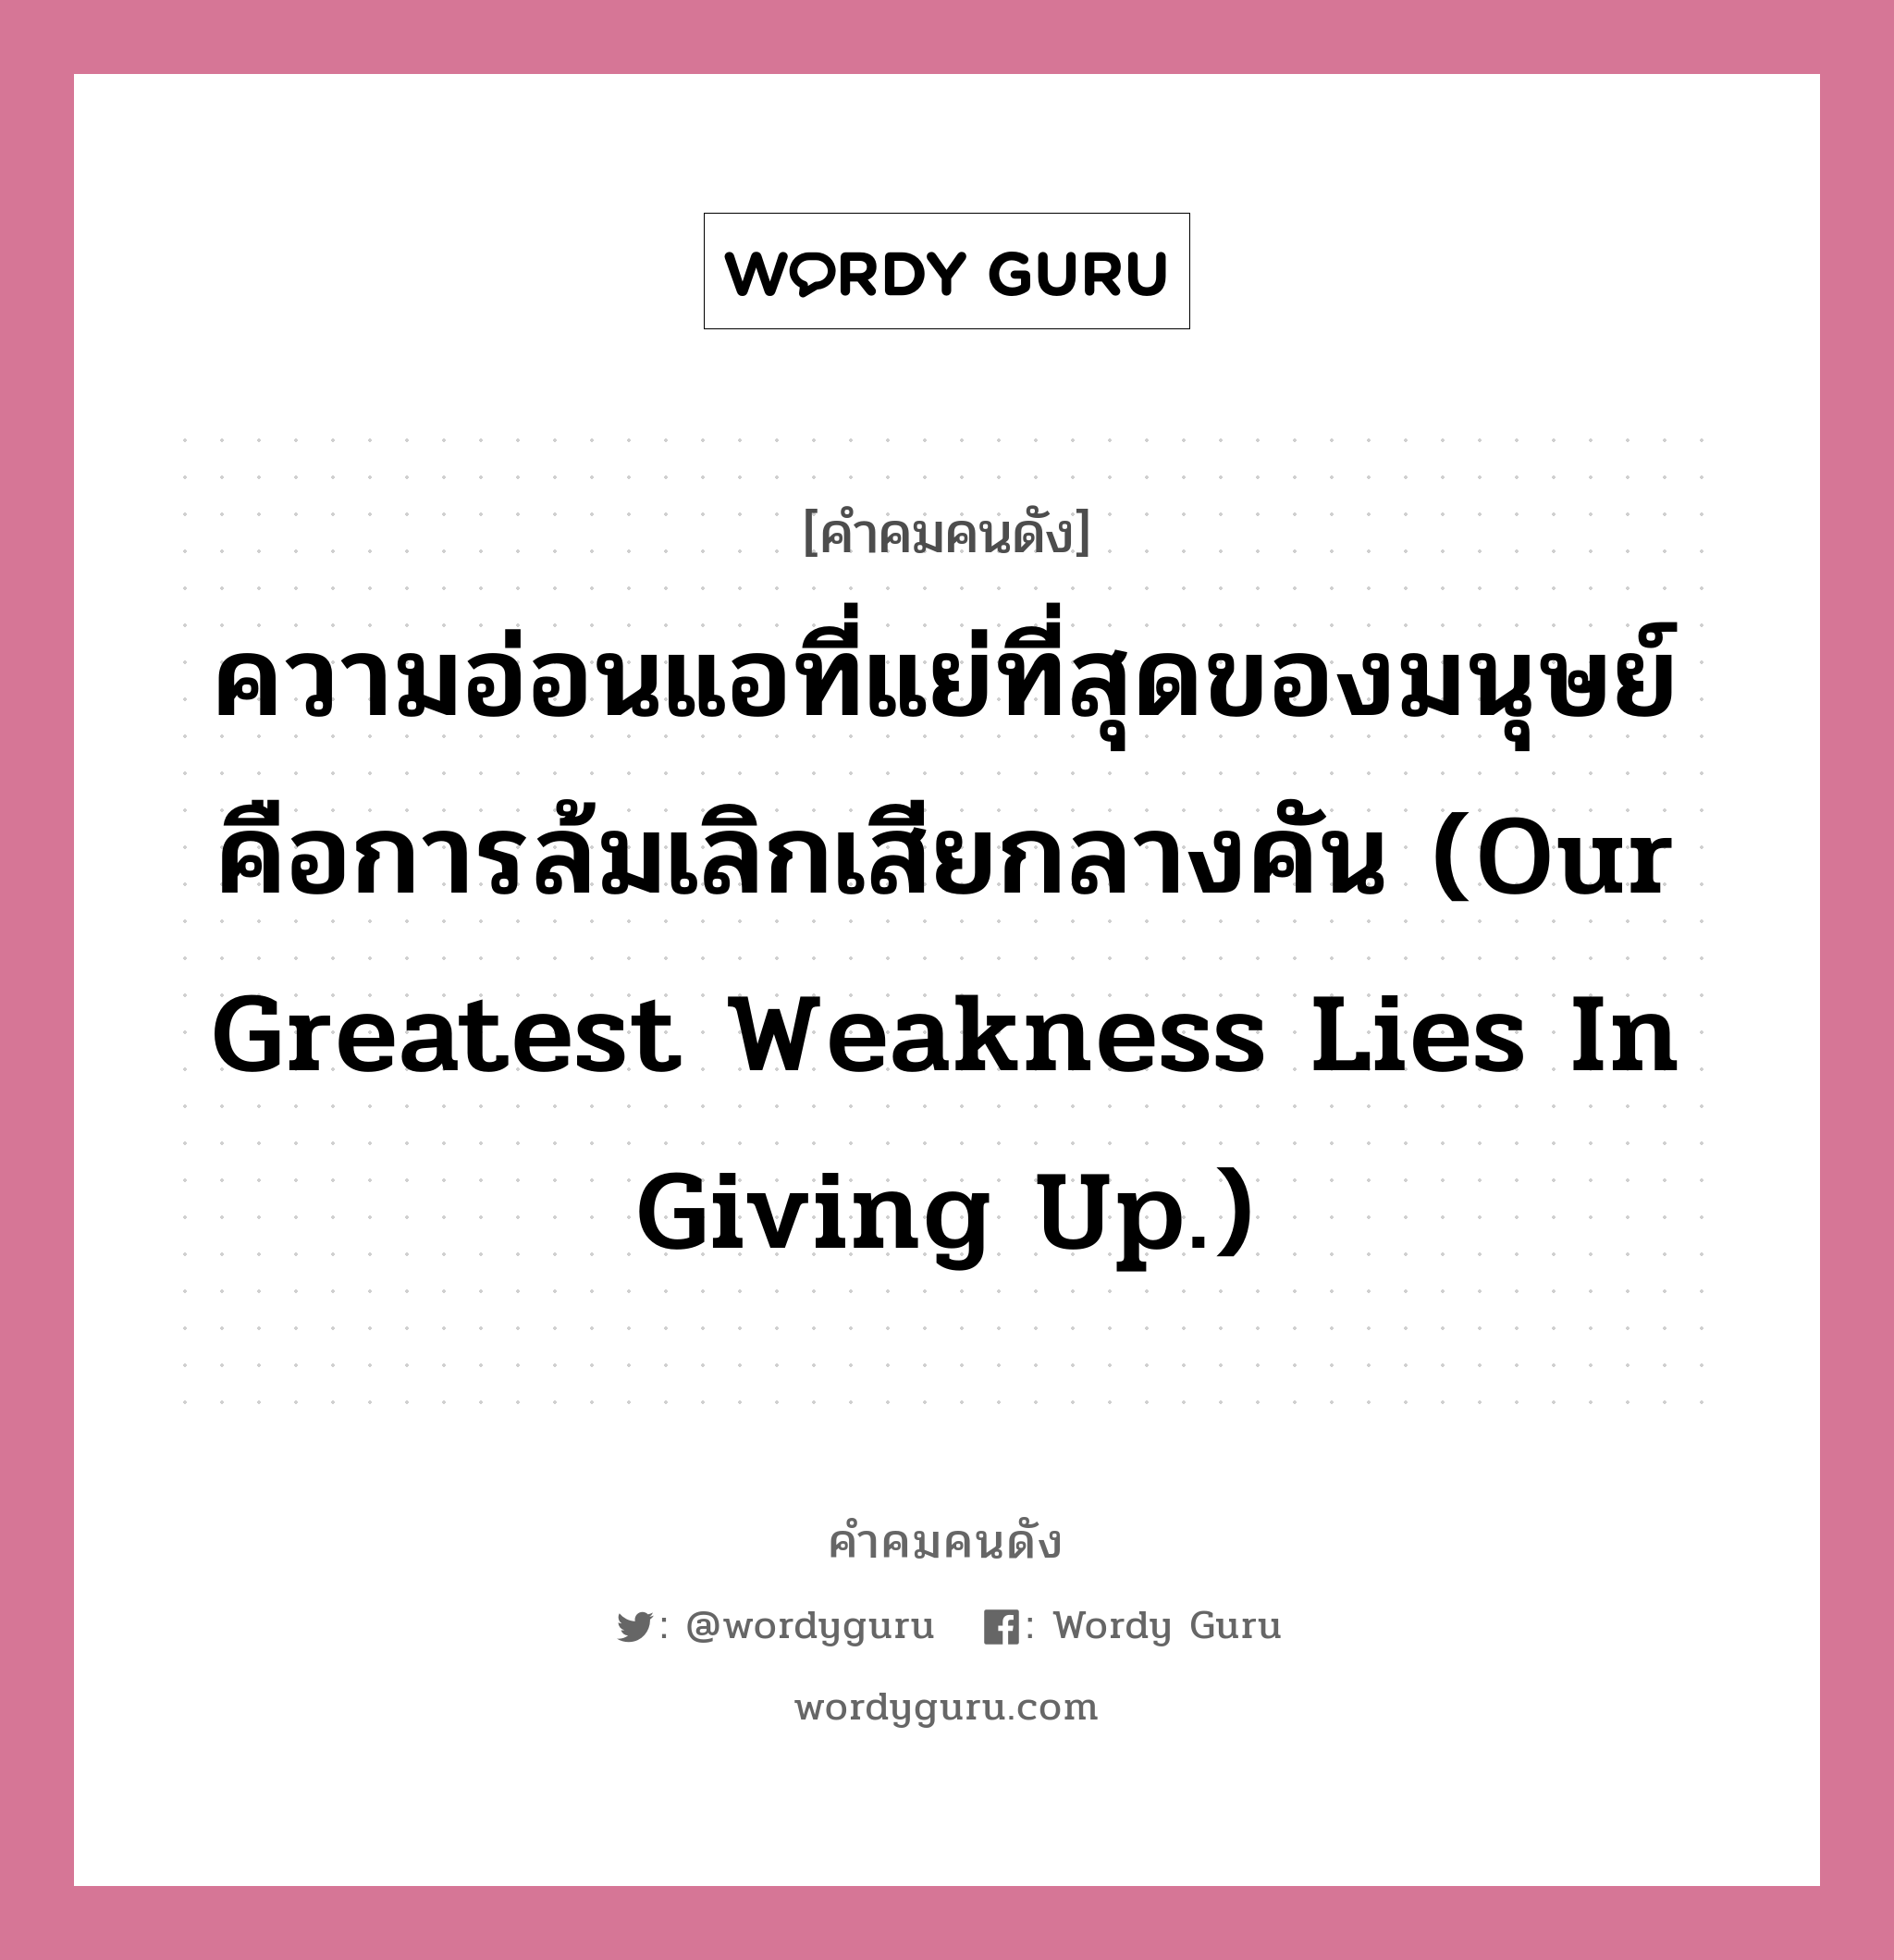 ความอ่อนแอที่แย่ที่สุดของมนุษย์ คือการล้มเลิกเสียกลางคัน (Our greatest weakness lies in giving up.), คำคมคนดัง ความอ่อนแอที่แย่ที่สุดของมนุษย์ คือการล้มเลิกเสียกลางคัน (Our greatest weakness lies in giving up.) หมวด โทมัส เอดิสัน หมวด โทมัส เอดิสัน